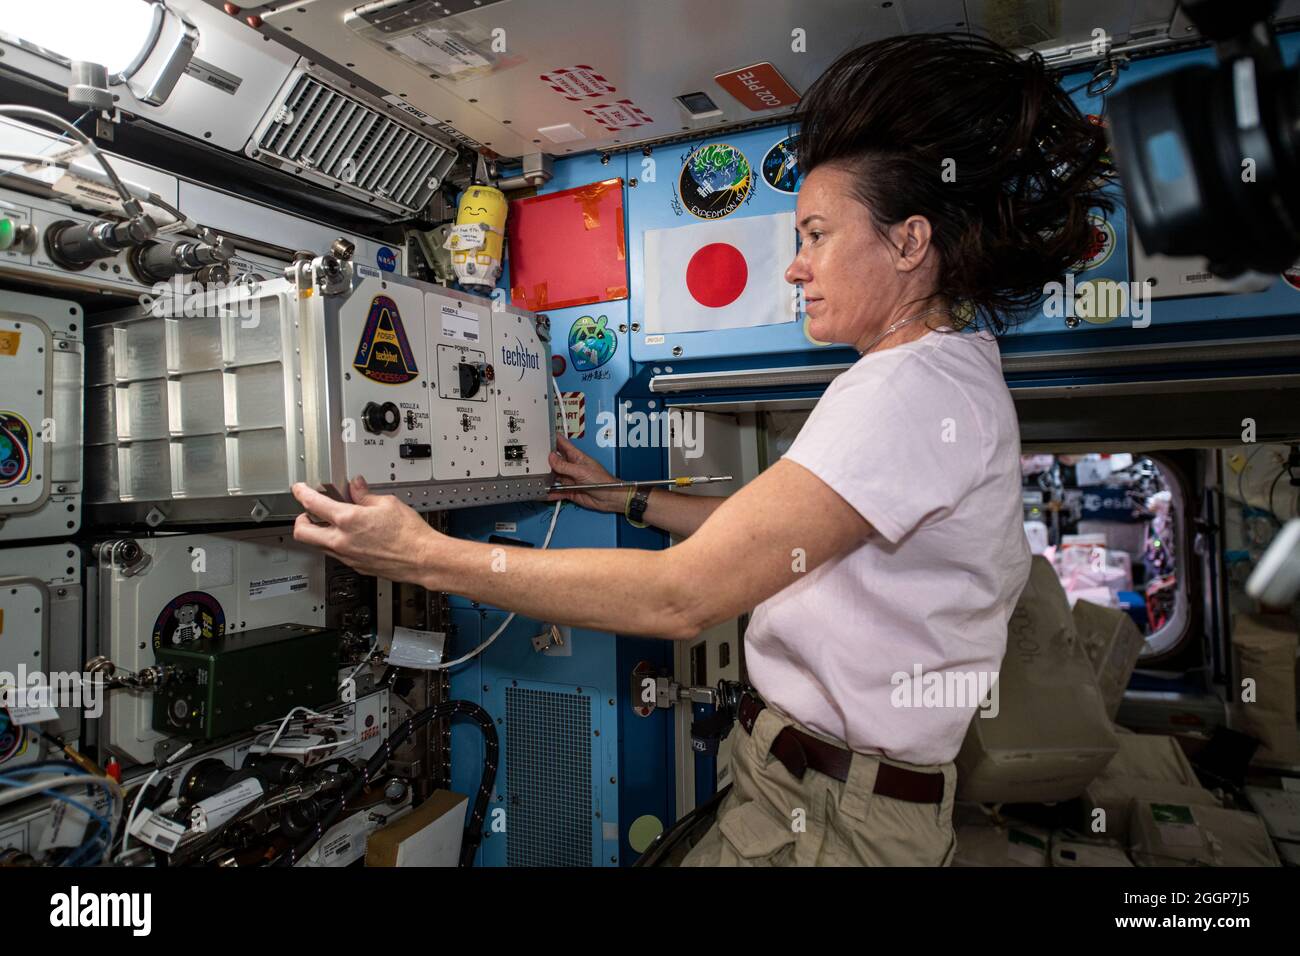 Iss065e093498 (7. Juni 2021) --- die NASA-Astronautin Megan McArthur installiert einen neuen ADSEP-2 (Advanced Space Experiment Processor-2) mit ADSEP-UMAMI-Proben im Kibo-Labormodul an Bord der Internationalen Raumstation (ISS). Das Verständnis der Untersuchung der Mikrogravitation auf Tier-Mikrobe-Interaktionen (UMAMI) untersucht die Auswirkungen der Raumfahrt auf die molekularen und chemischen Wechselwirkungen zwischen nützlichen Mikroben und ihren tierischen Wirten. Die ADSEP-2-Anlage unterstützt die Beobachtung biologischer oder physikalischer Proben und kann auch an Bord des Cargo Dragon und Northrop Grum betrieben werden Stockfoto